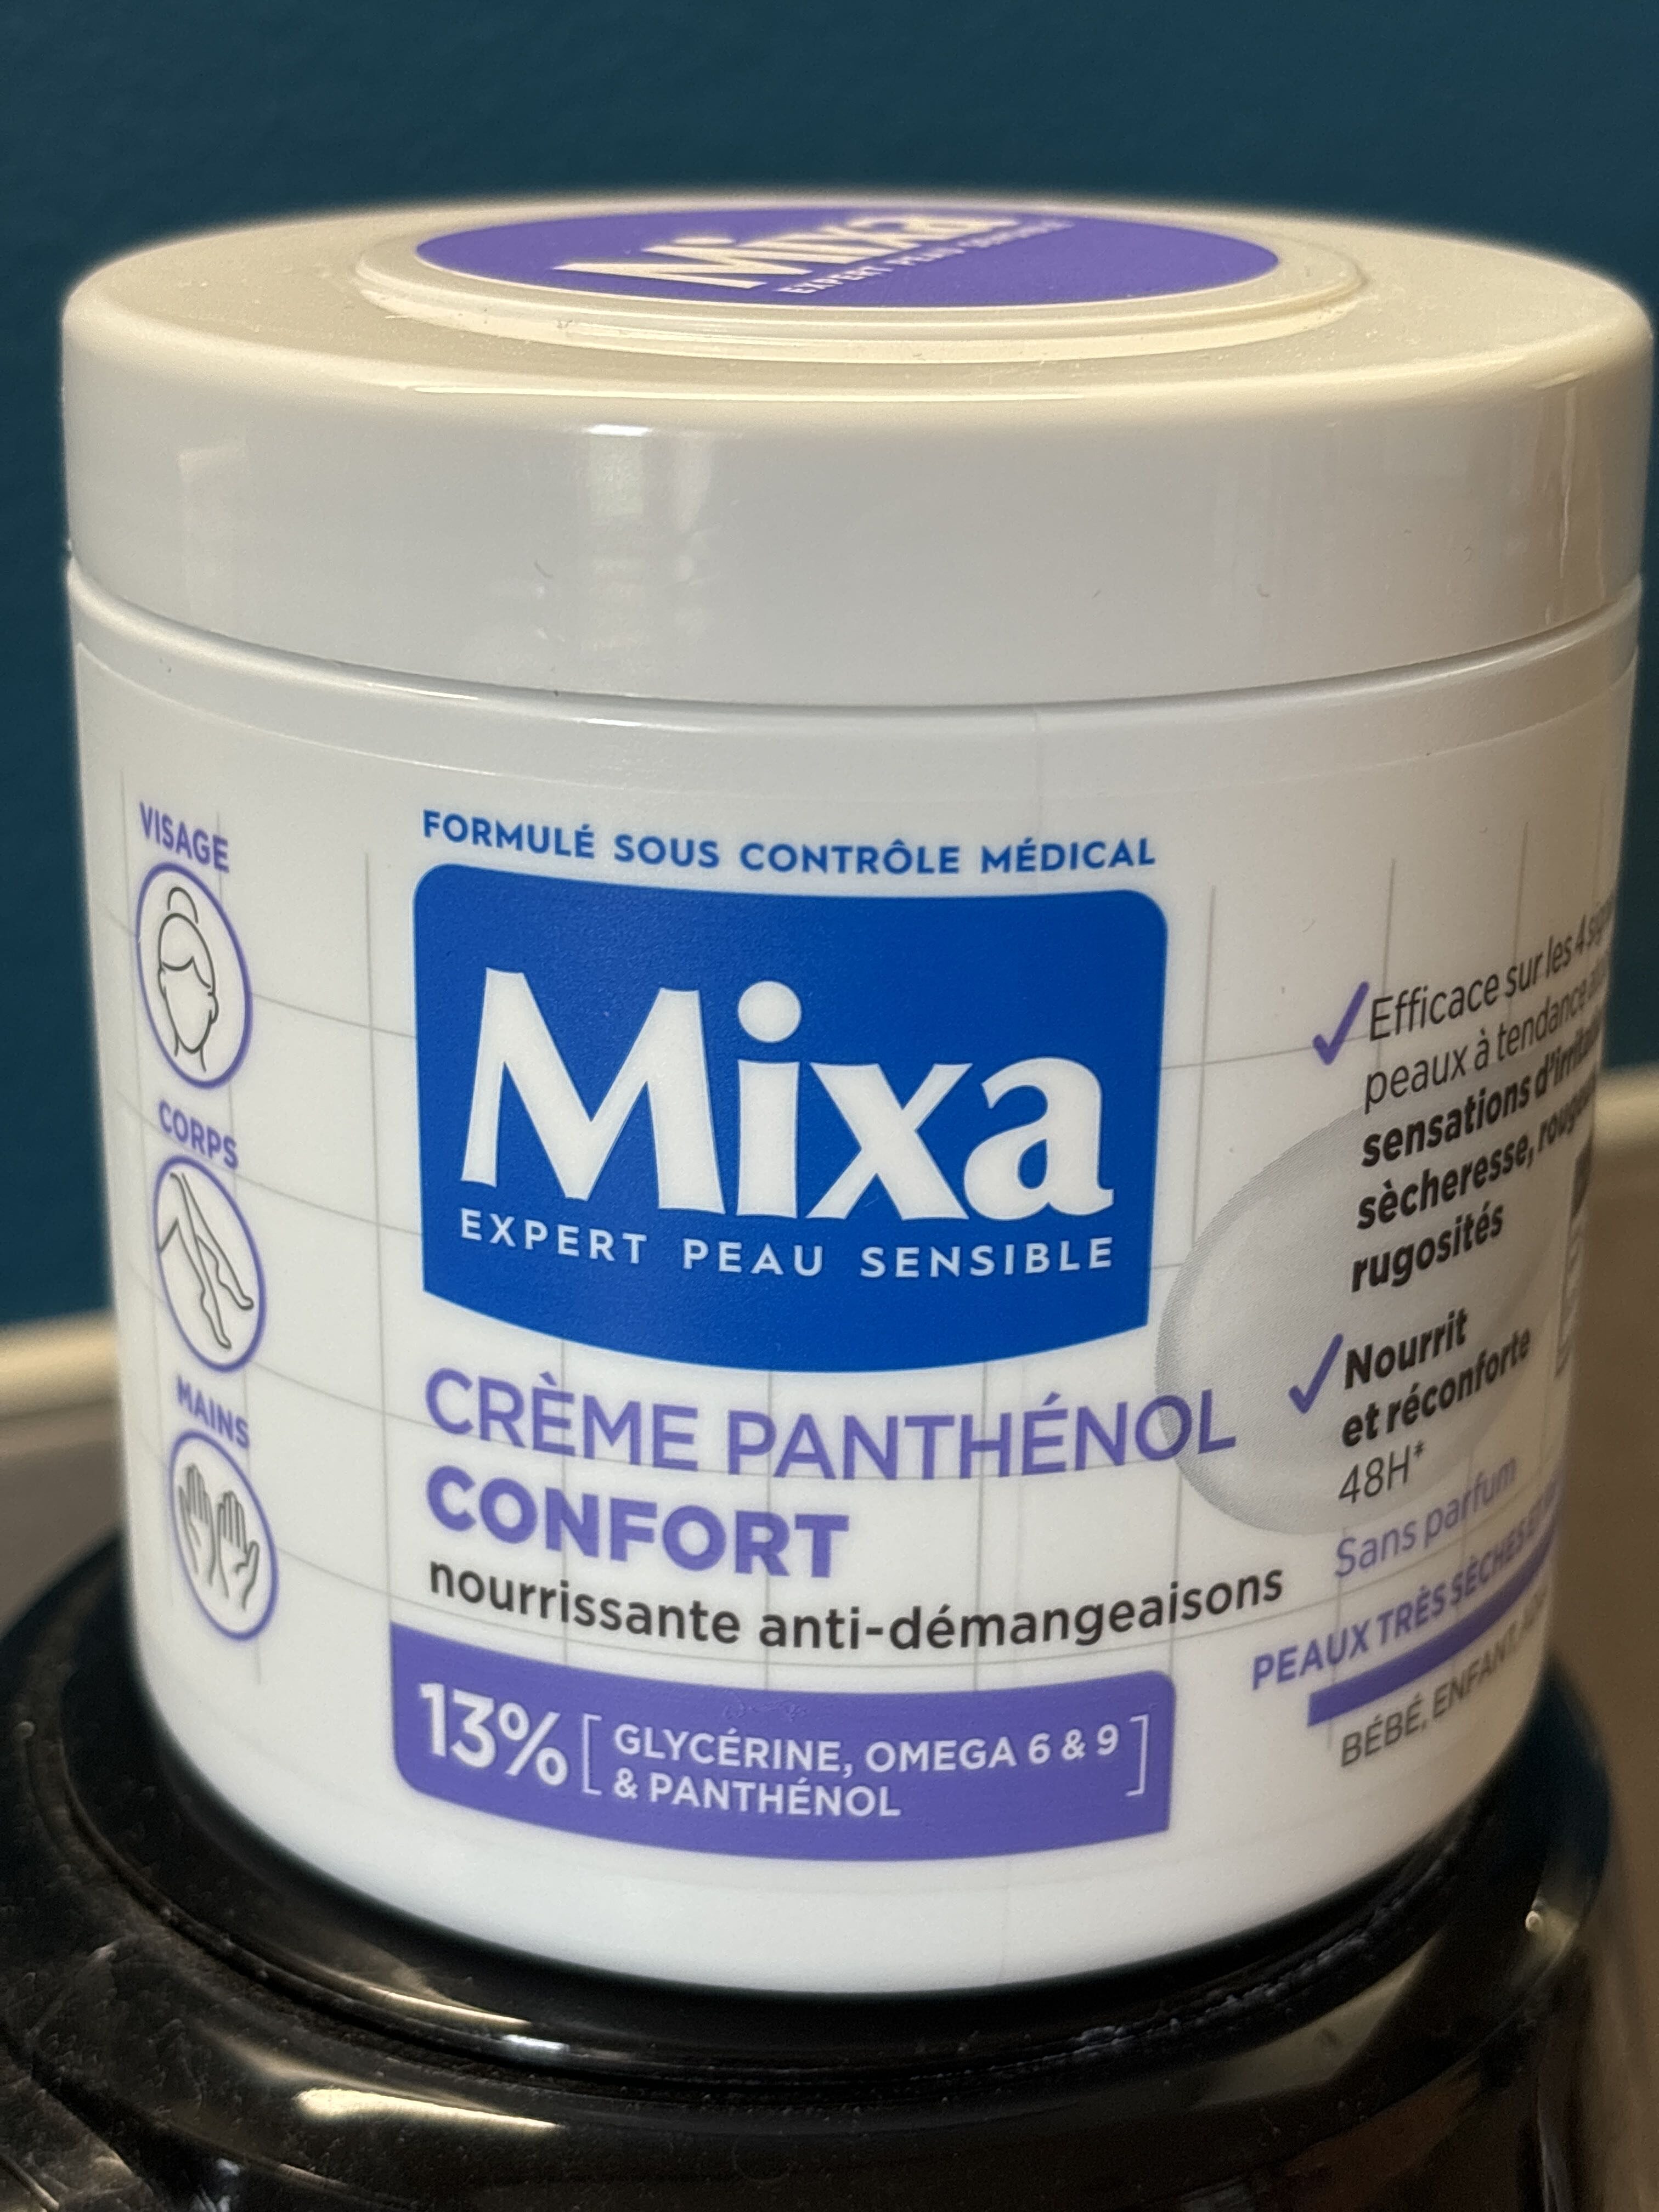 Mixa expert peau sensible - Product - fr